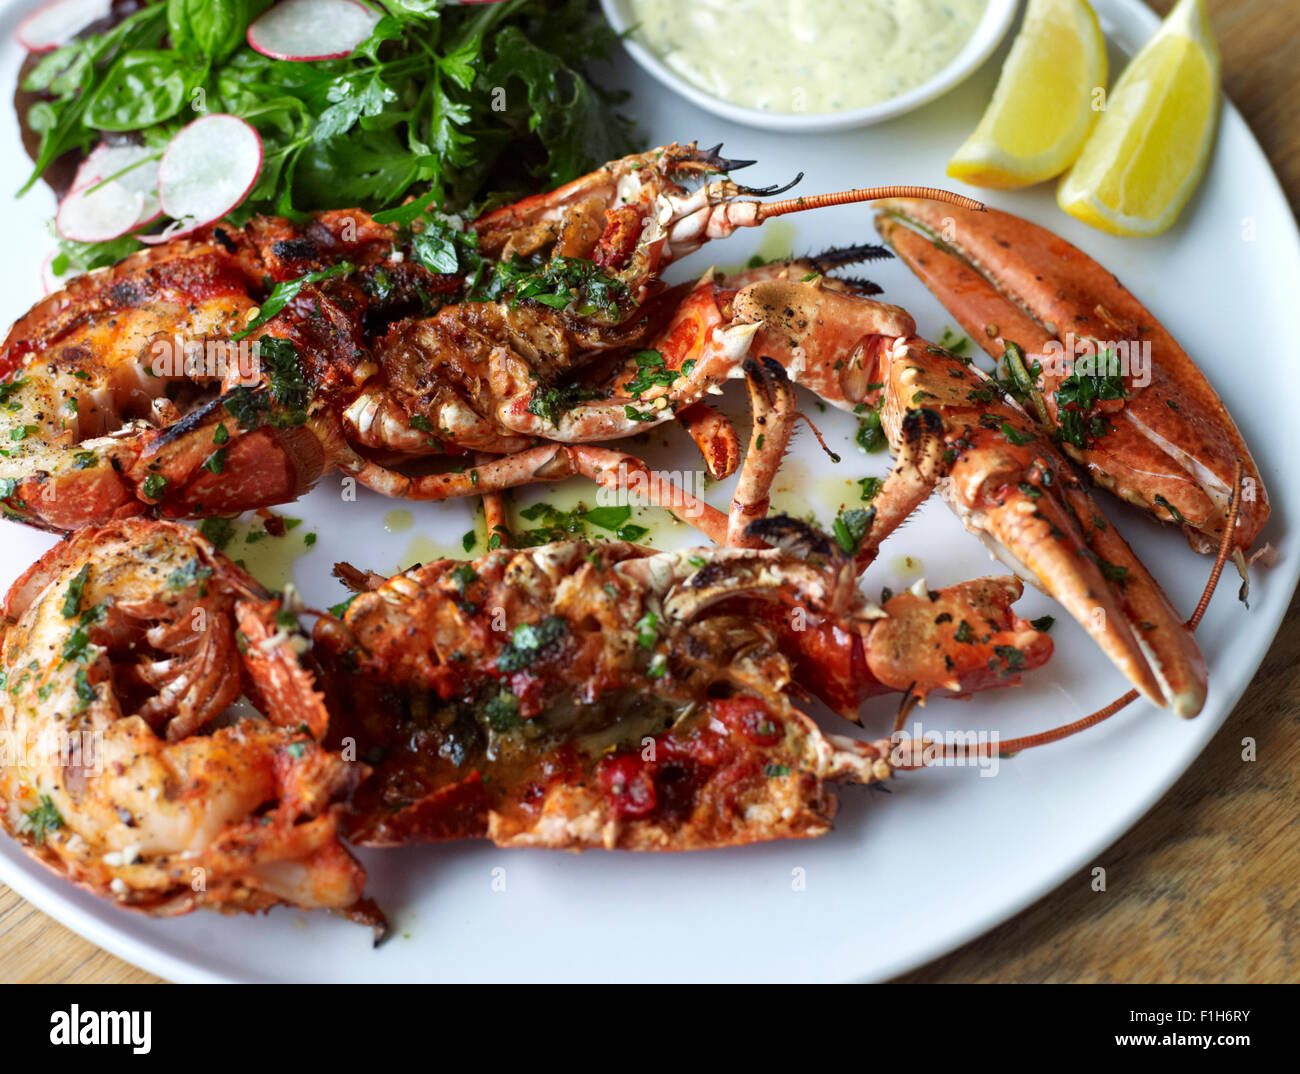 Un gros plan du homard et des crustacés présentés sur une assiette avec du citron, sauce tartare, assaisonnement, et une salade. Banque D'Images